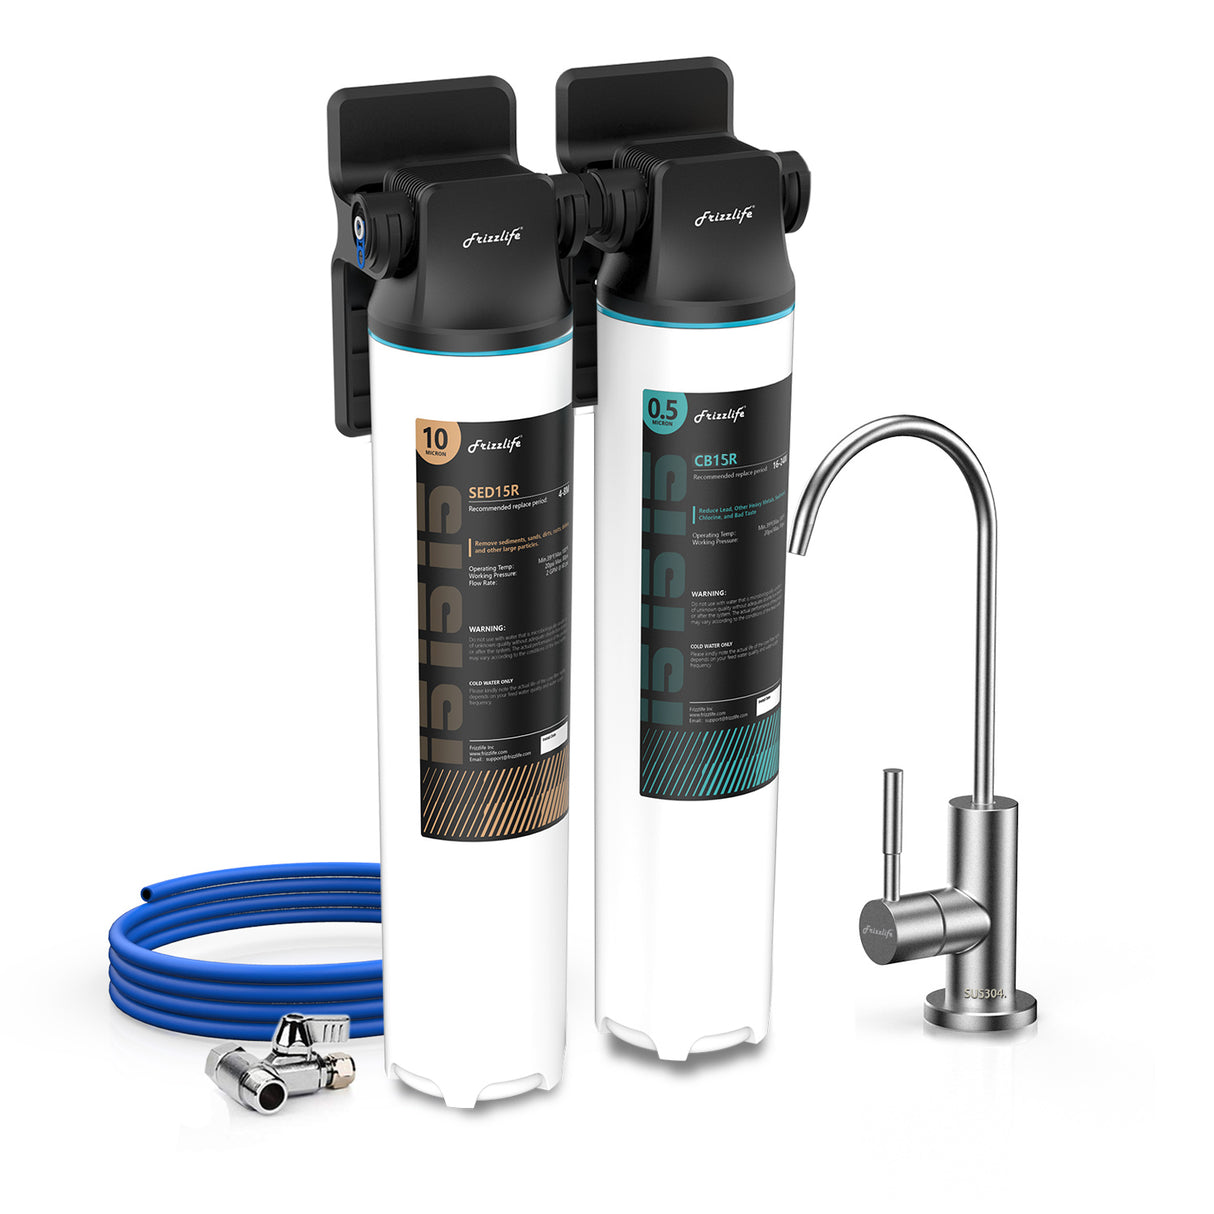 Frizzlife DW15F Système de filtre à eau sous évier avec robinet en nickel brossé, éléments certifiés NSF/ANSI 53 et 42